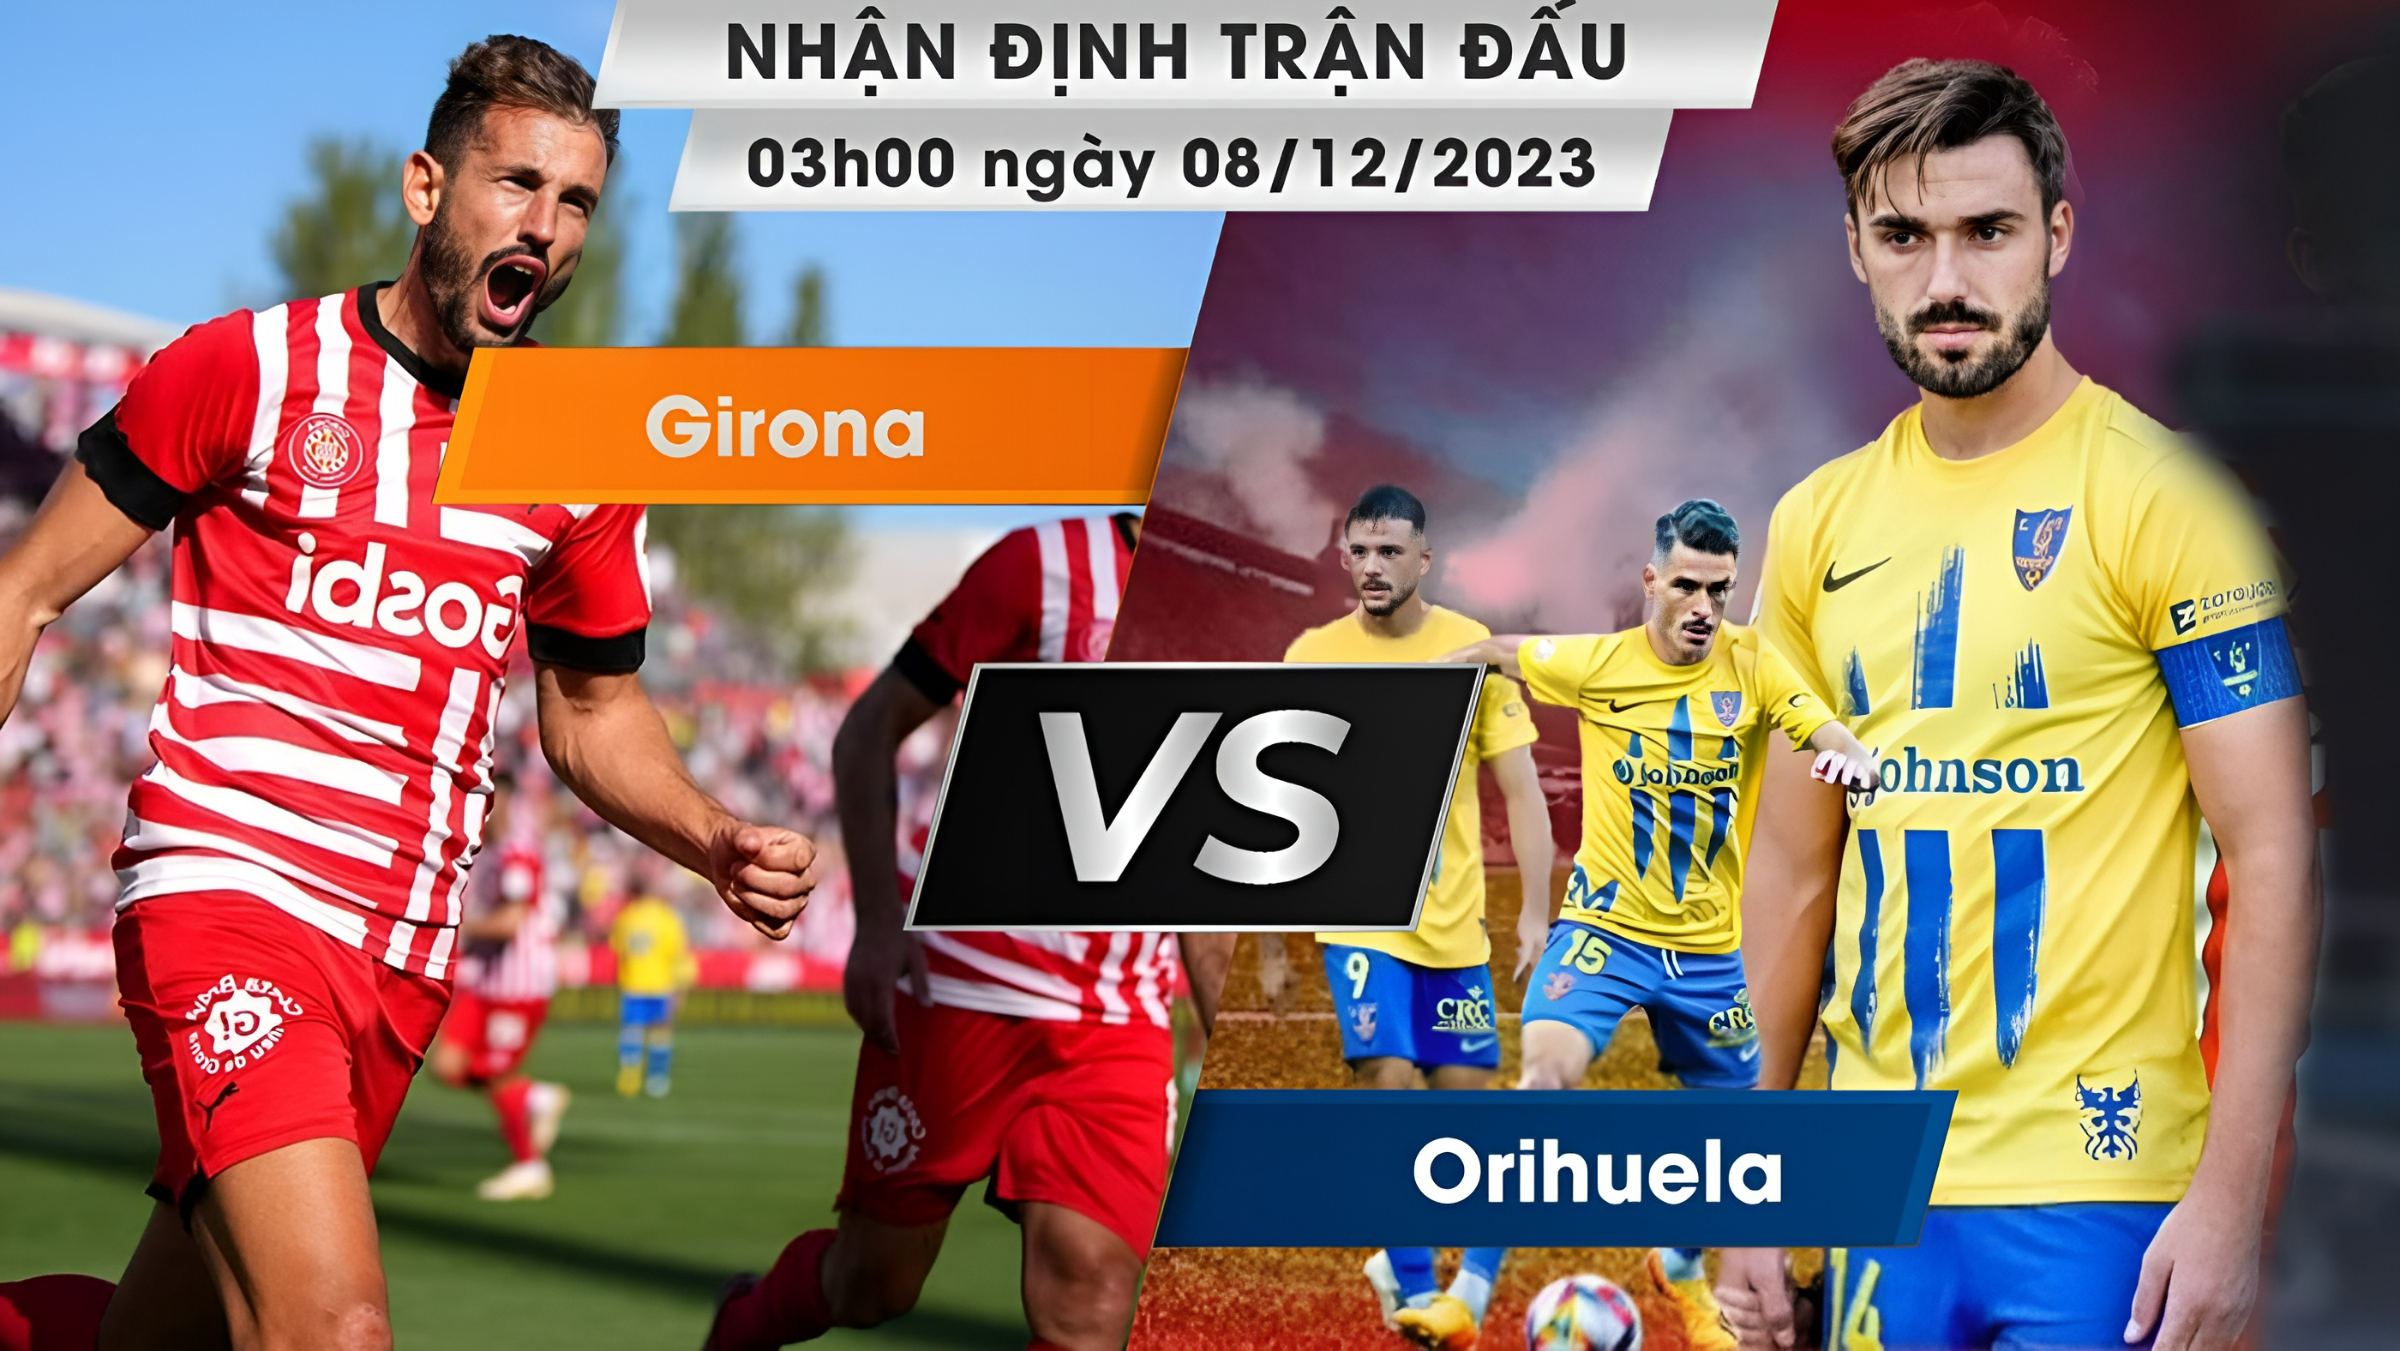 Nhận định, dự đoán Orihuela vs Girona, 03h00 ngày 08/12/2023